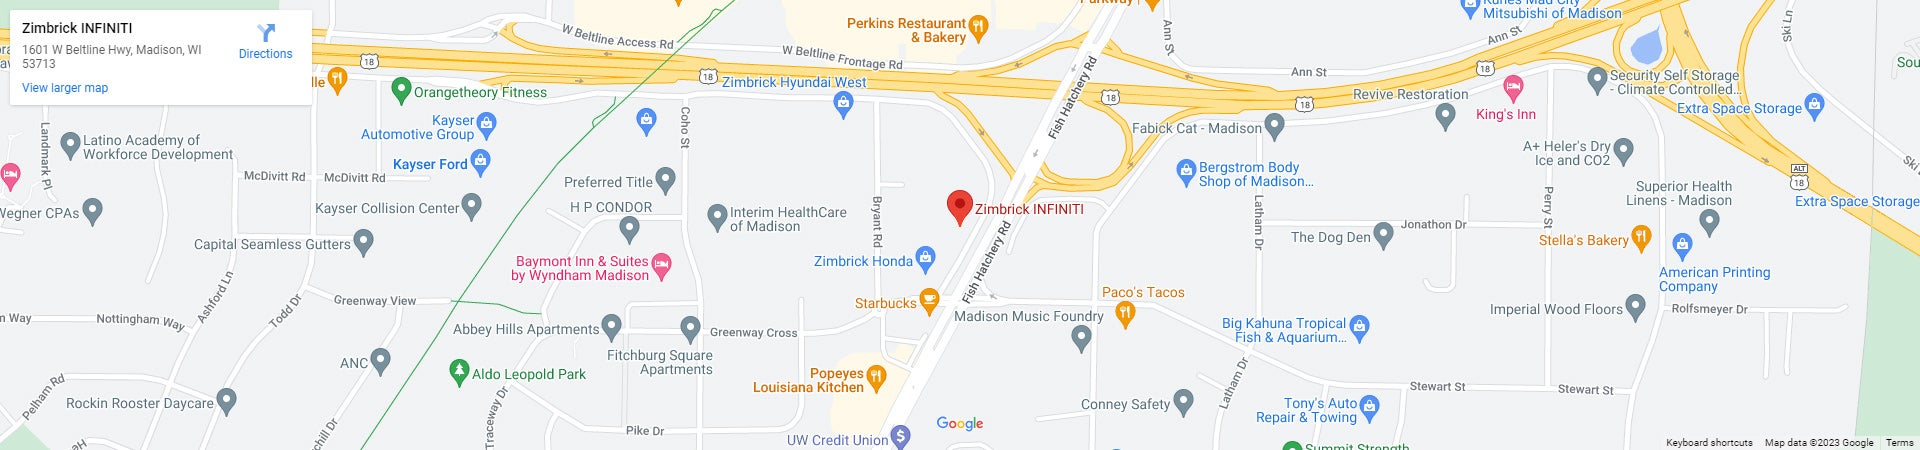 Zimbrick INFINITI of Madison Google Map